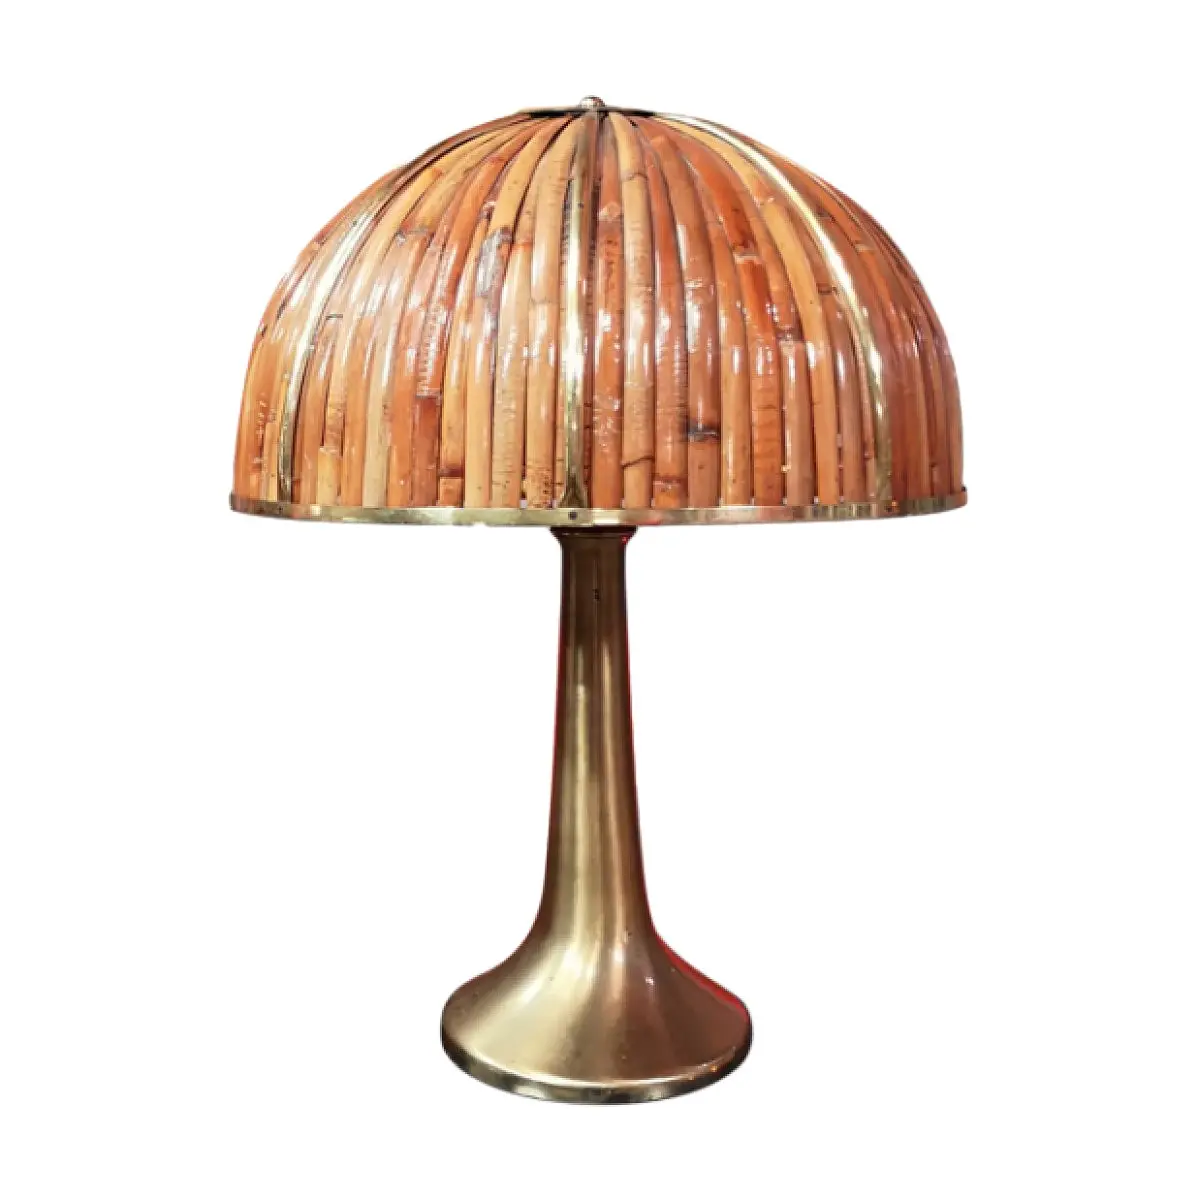 Commercio all'ingrosso di alta qualità di lusso moderno lampada da tavolo mobili per interni Gabriella Crespi raro Fungo bambù lampada da tavolo In italia, 1970s